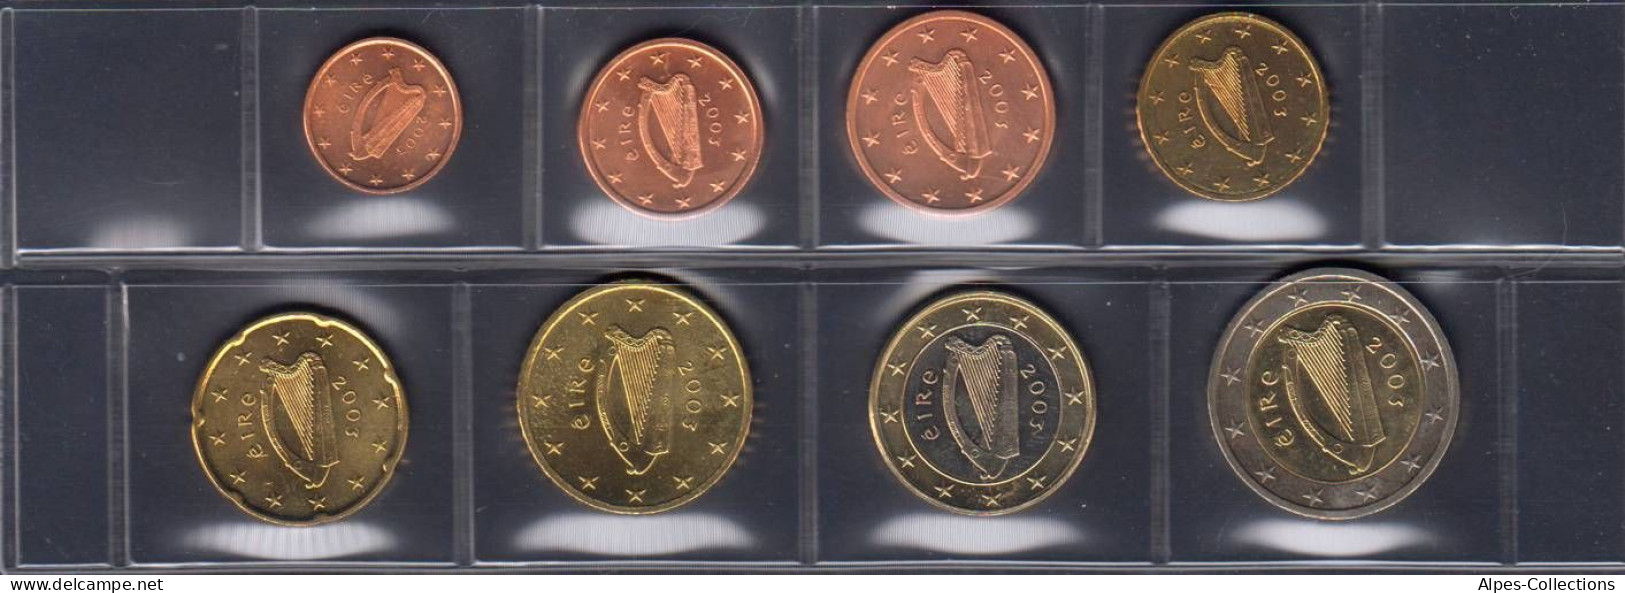 IRX2003.3 - SERIE IRLANDE - 2003 - 1 Cent à 2 Euros - Ireland